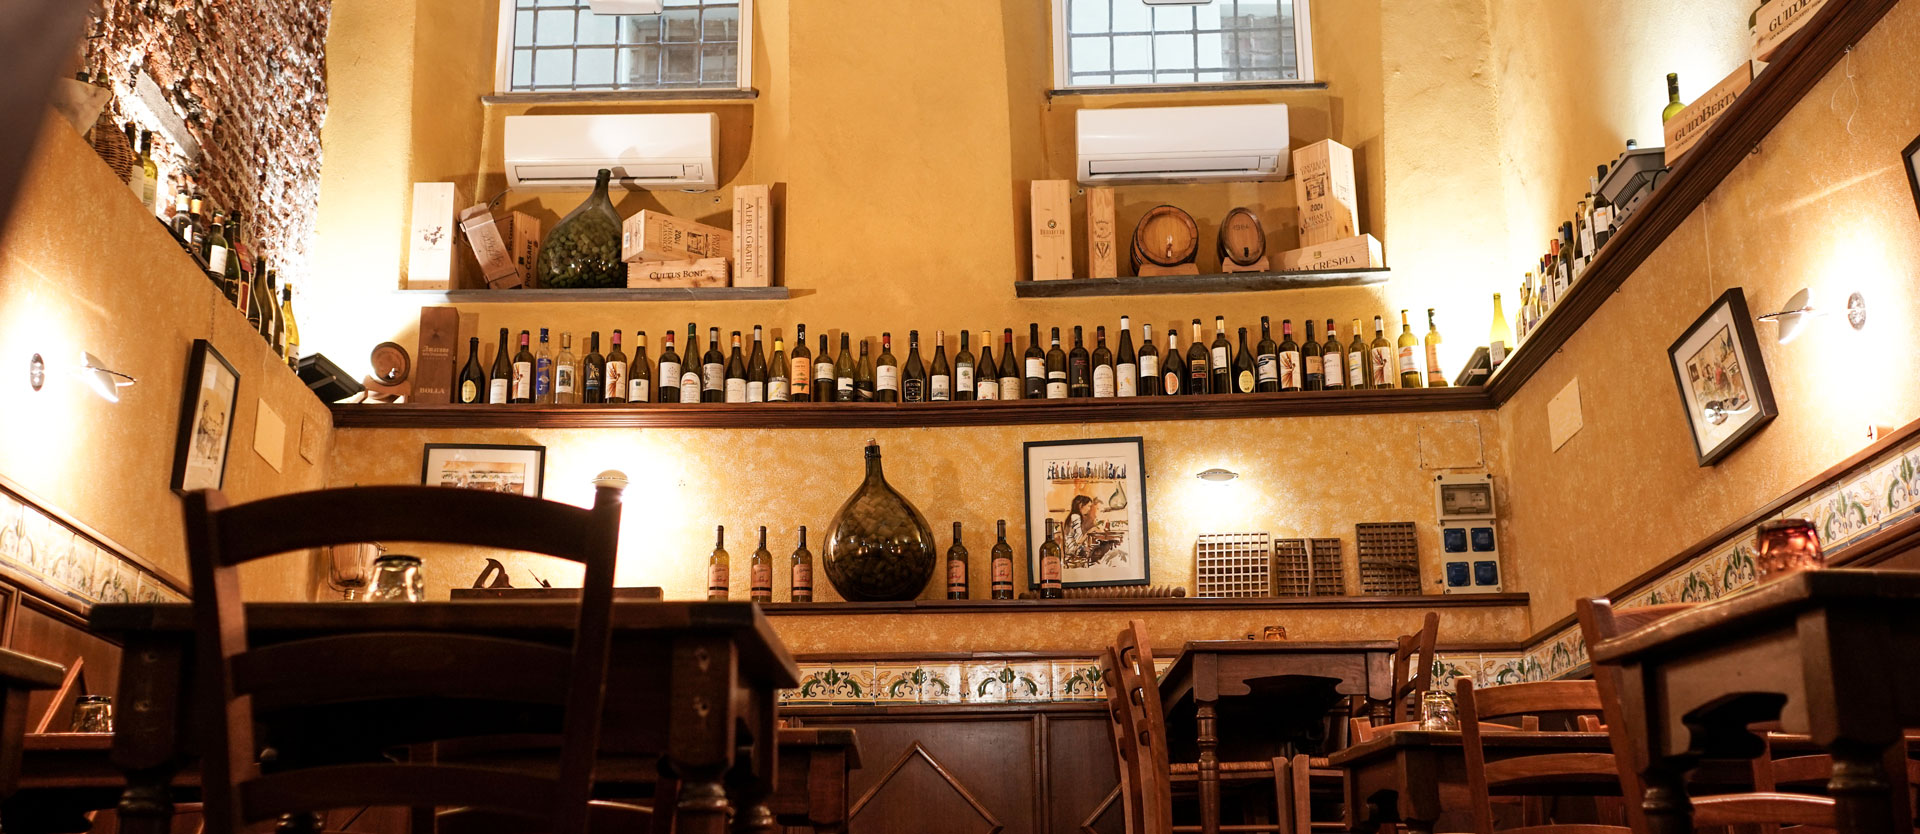 Storia dell'Osteria il Cadraio, ristorante tipico genovese nel centro storico di genova